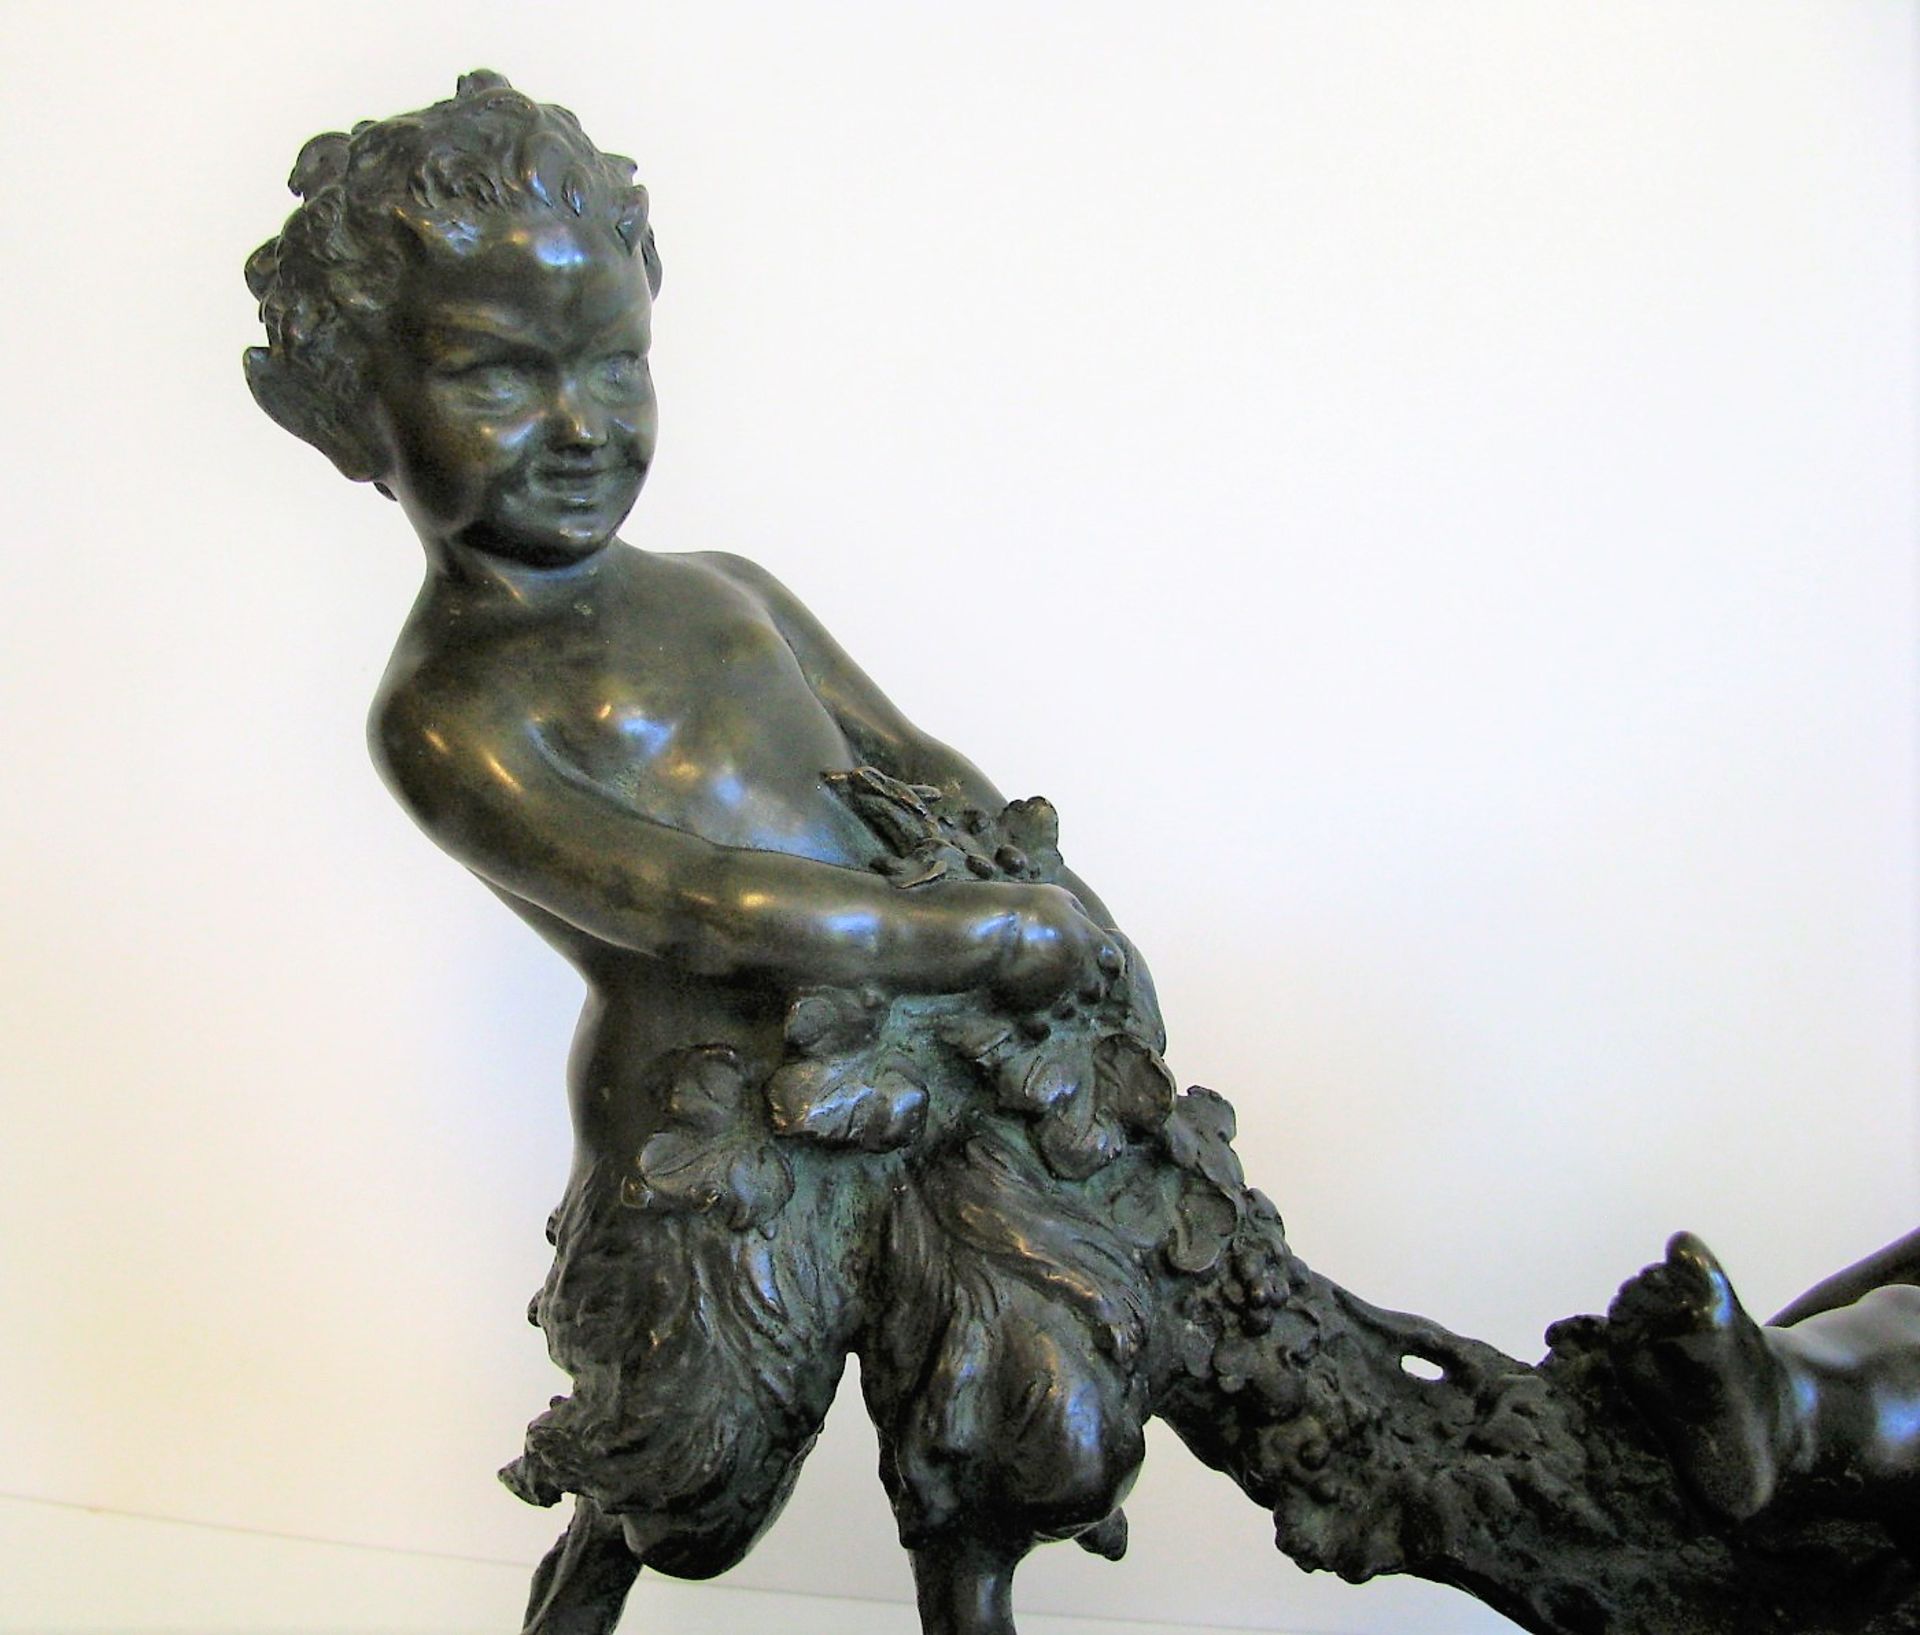 D'Aste, Joseph, 1881 - 1945, Neapel - Volendam, Italienisch-französischer Bildhauer, tätig um 1900- - Bild 4 aus 7